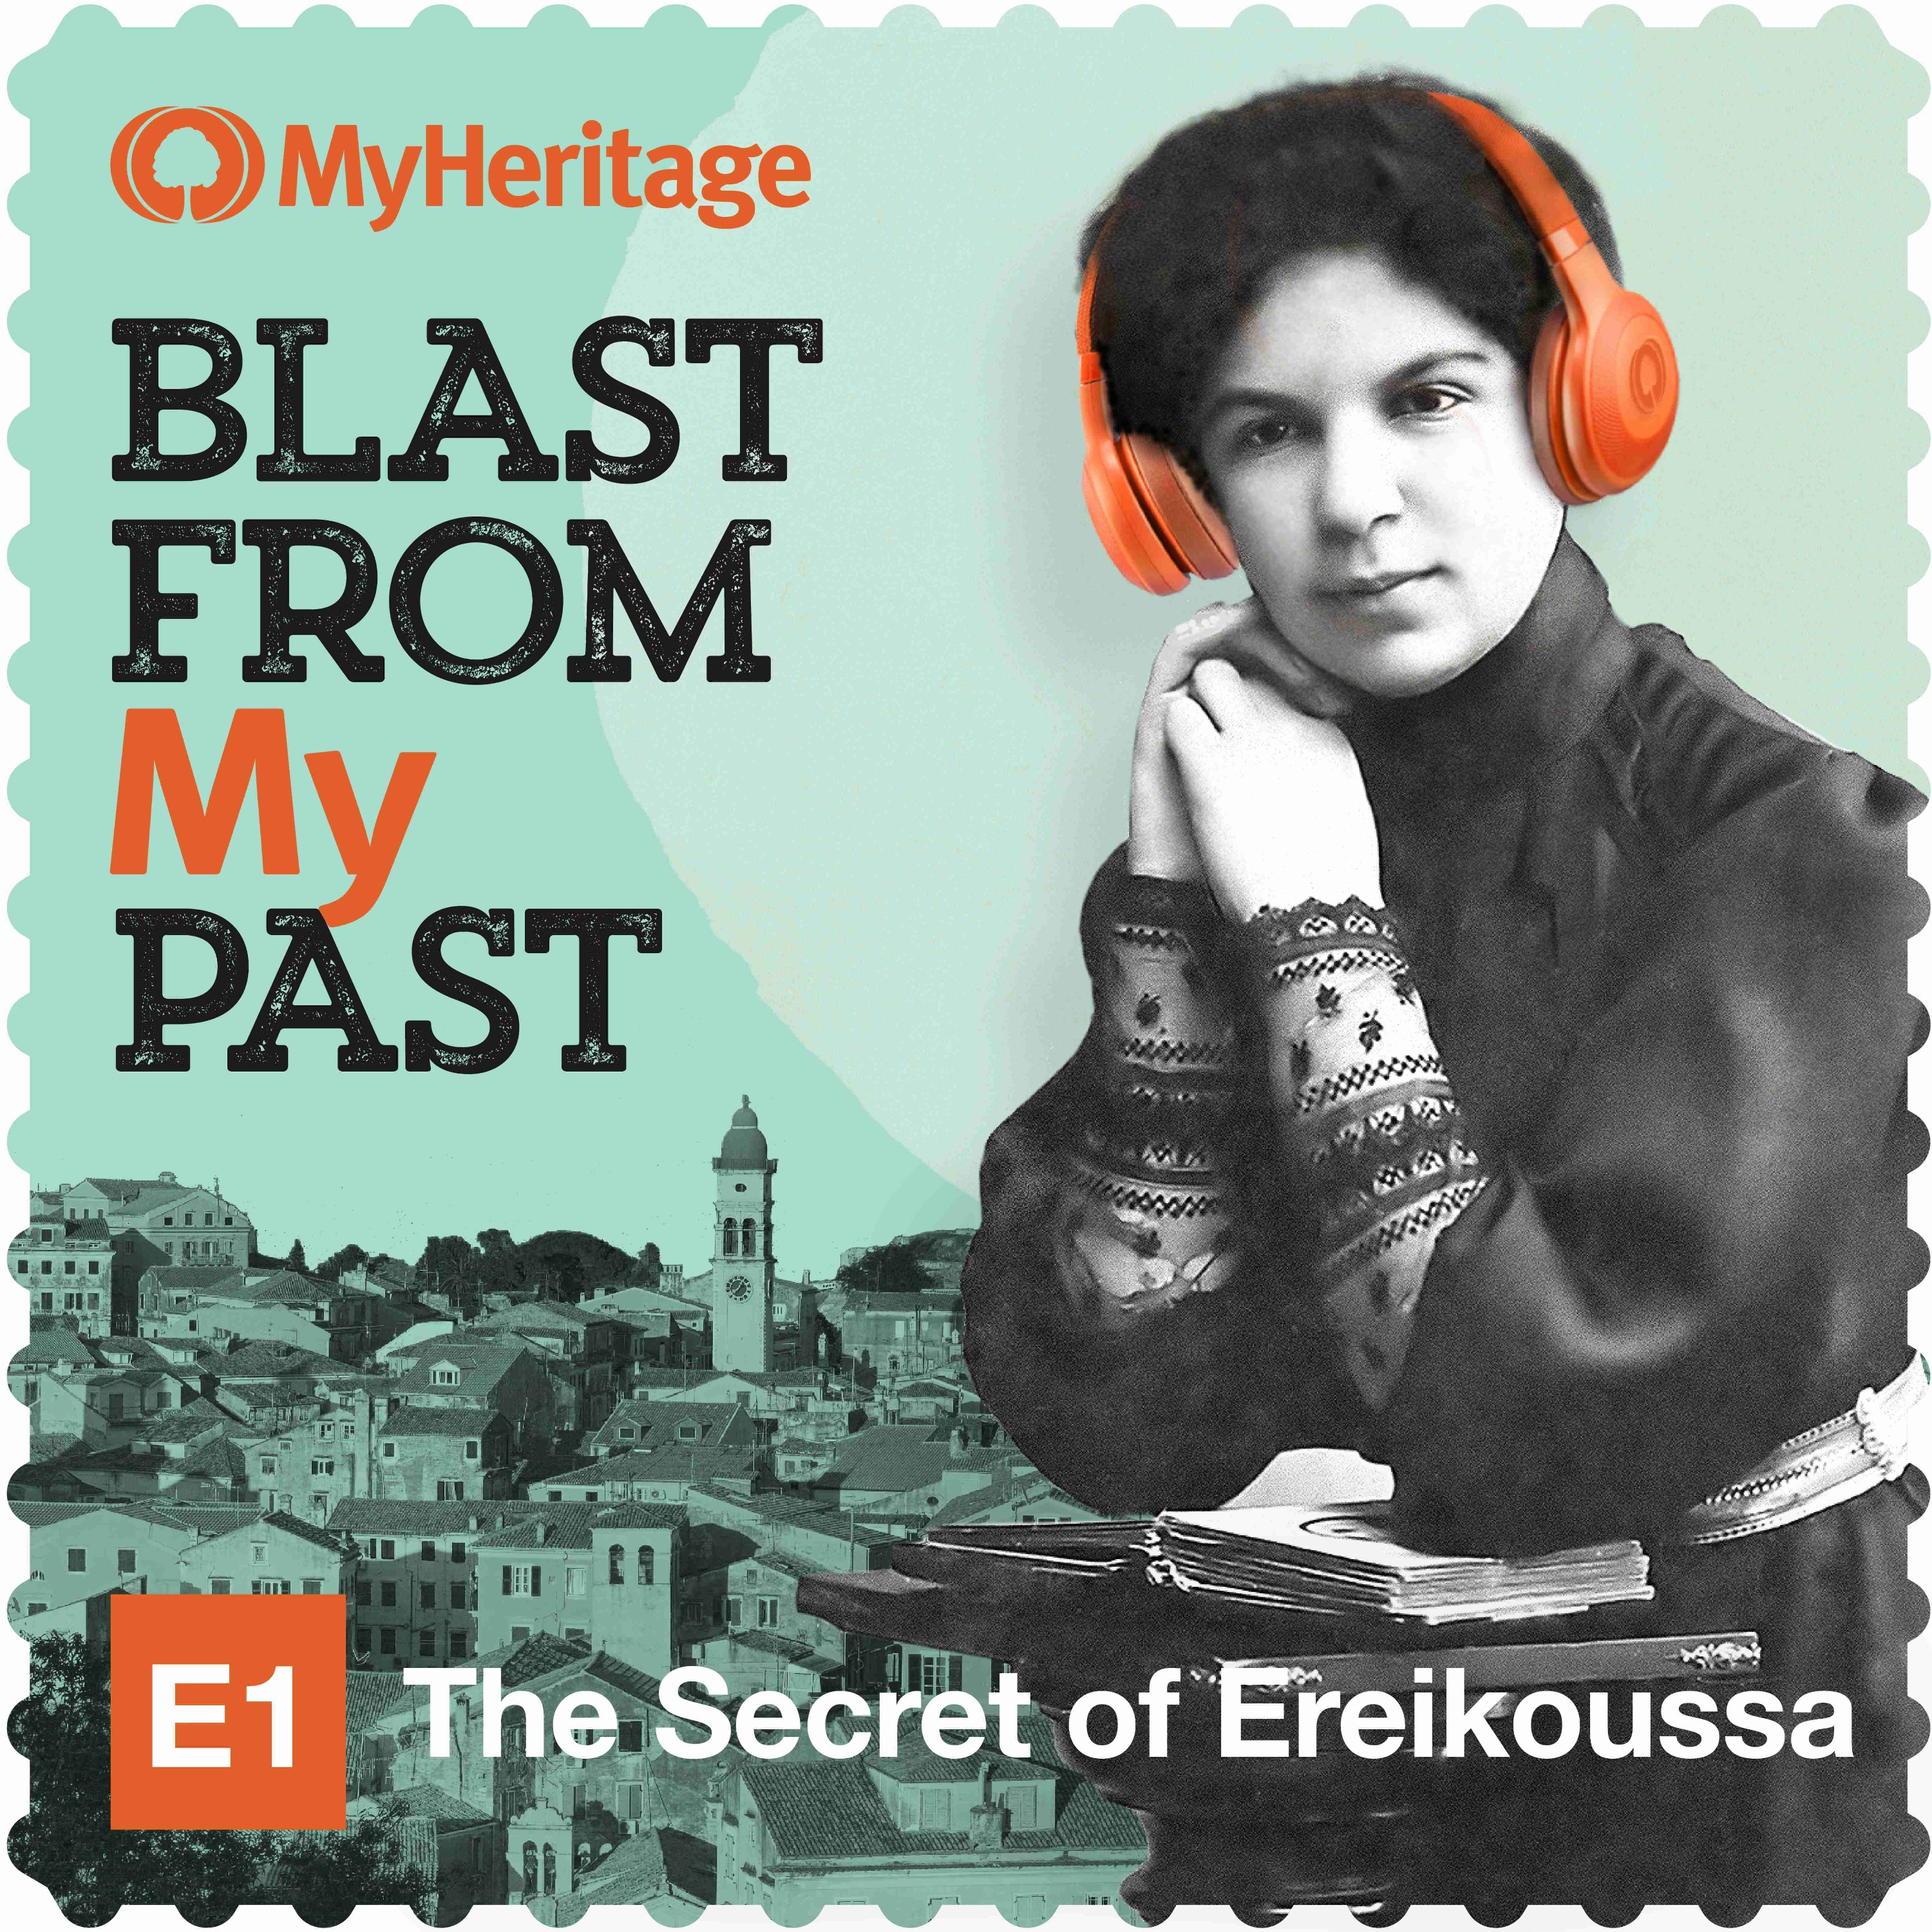 The Secret of Ereikoussa